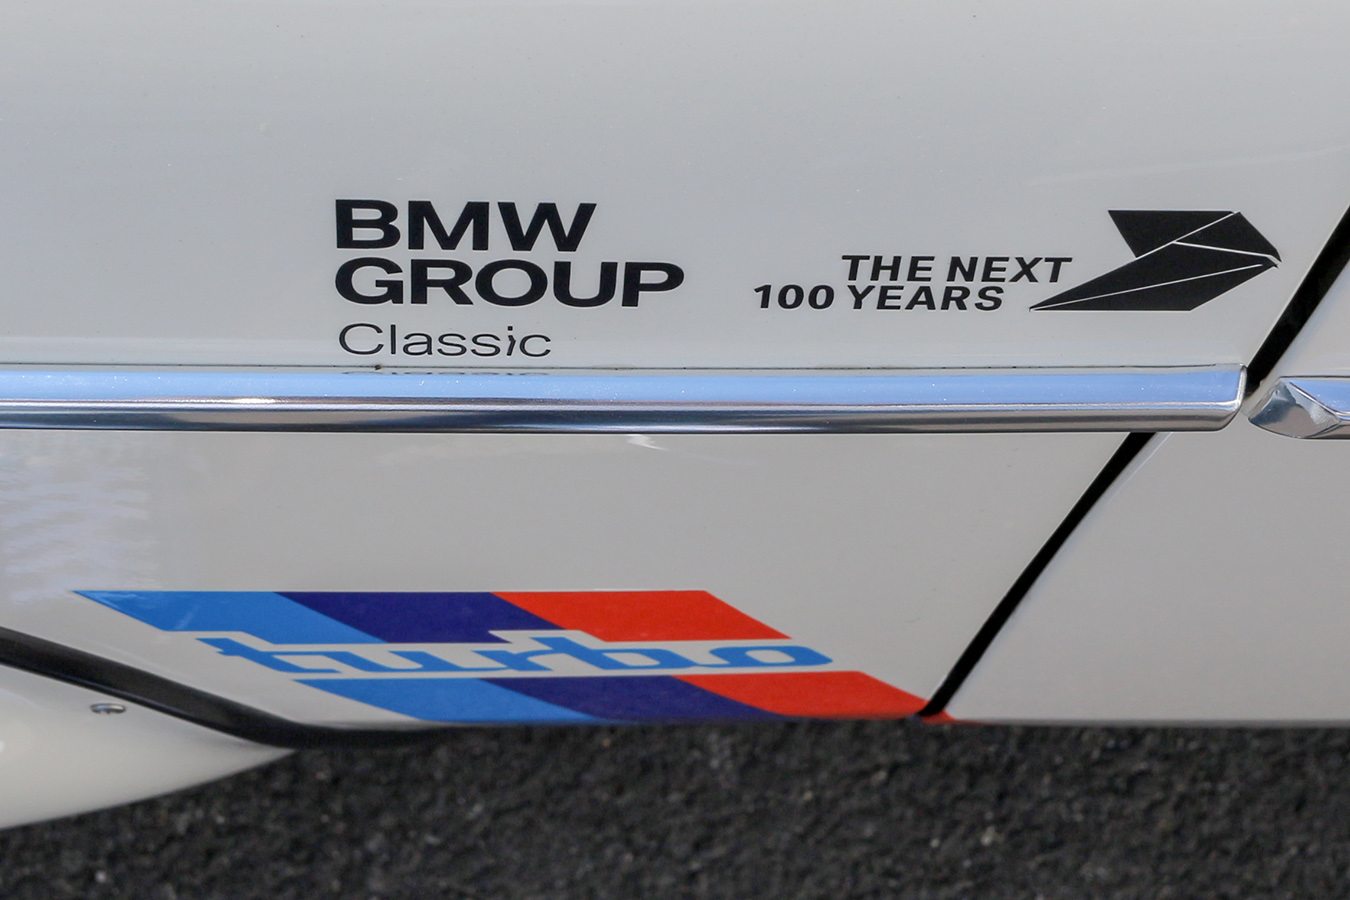 THE NEXT 100 YEARS (BMW, Munich, 2016)